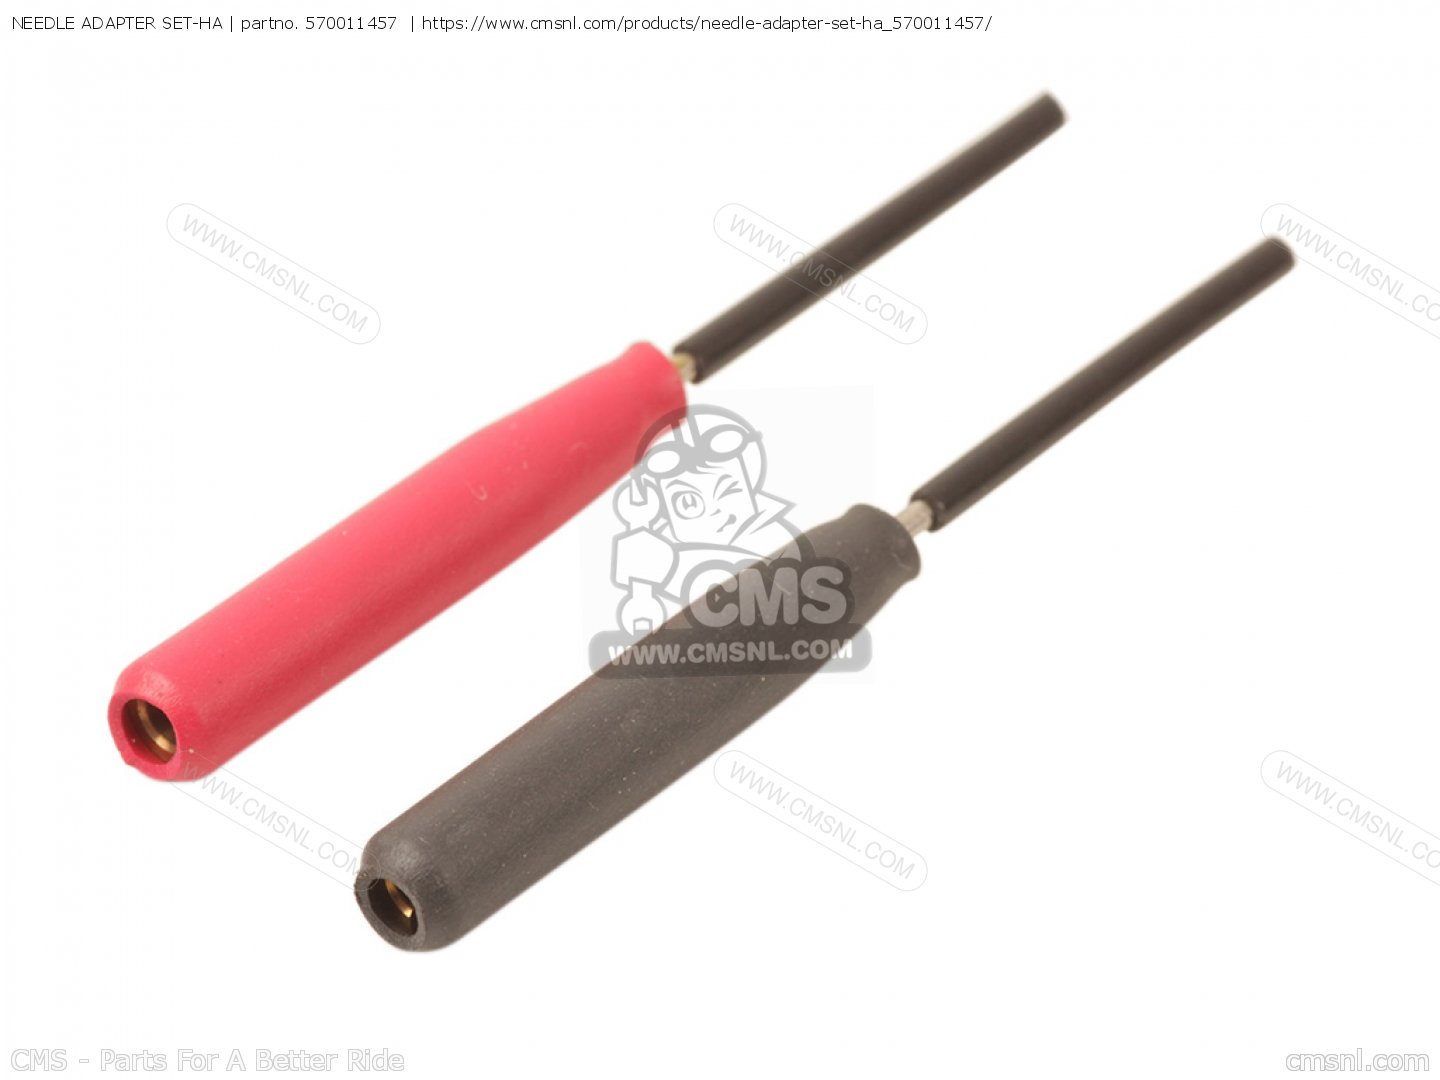 570011457: Needle Adapter Set-ha Kawasaki - buy the 57001-1457 at 